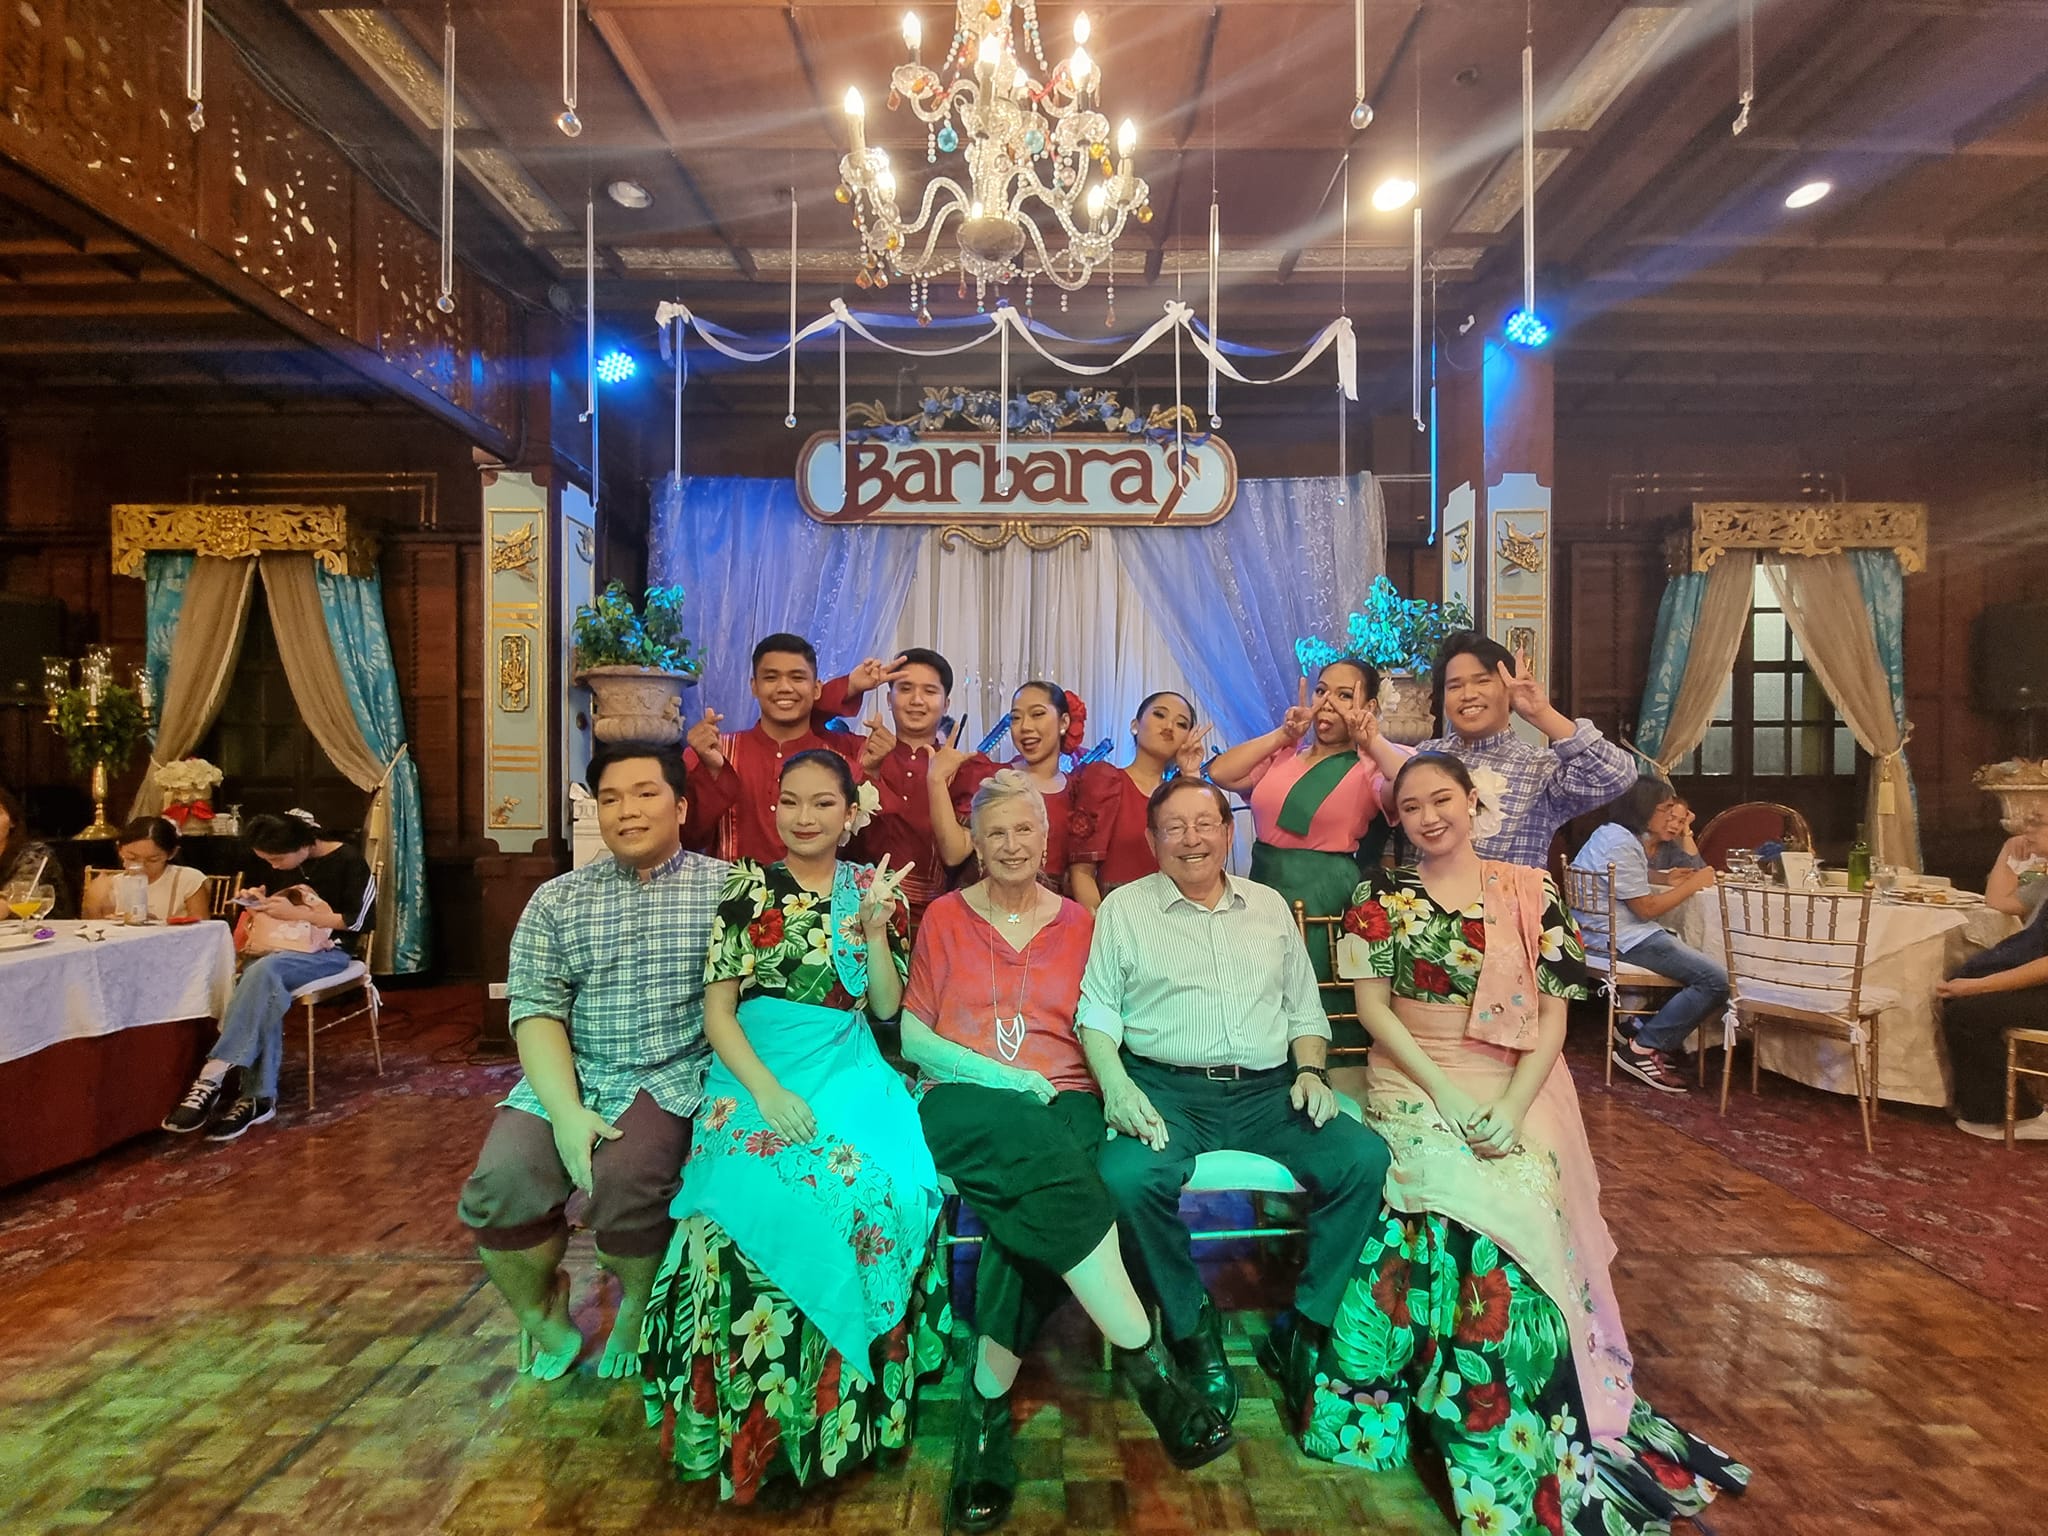 יושבים עם להקת הריקוד הפיליפינית שהופיעה בפני קהל הסועדים במועדון הלילה במנילה